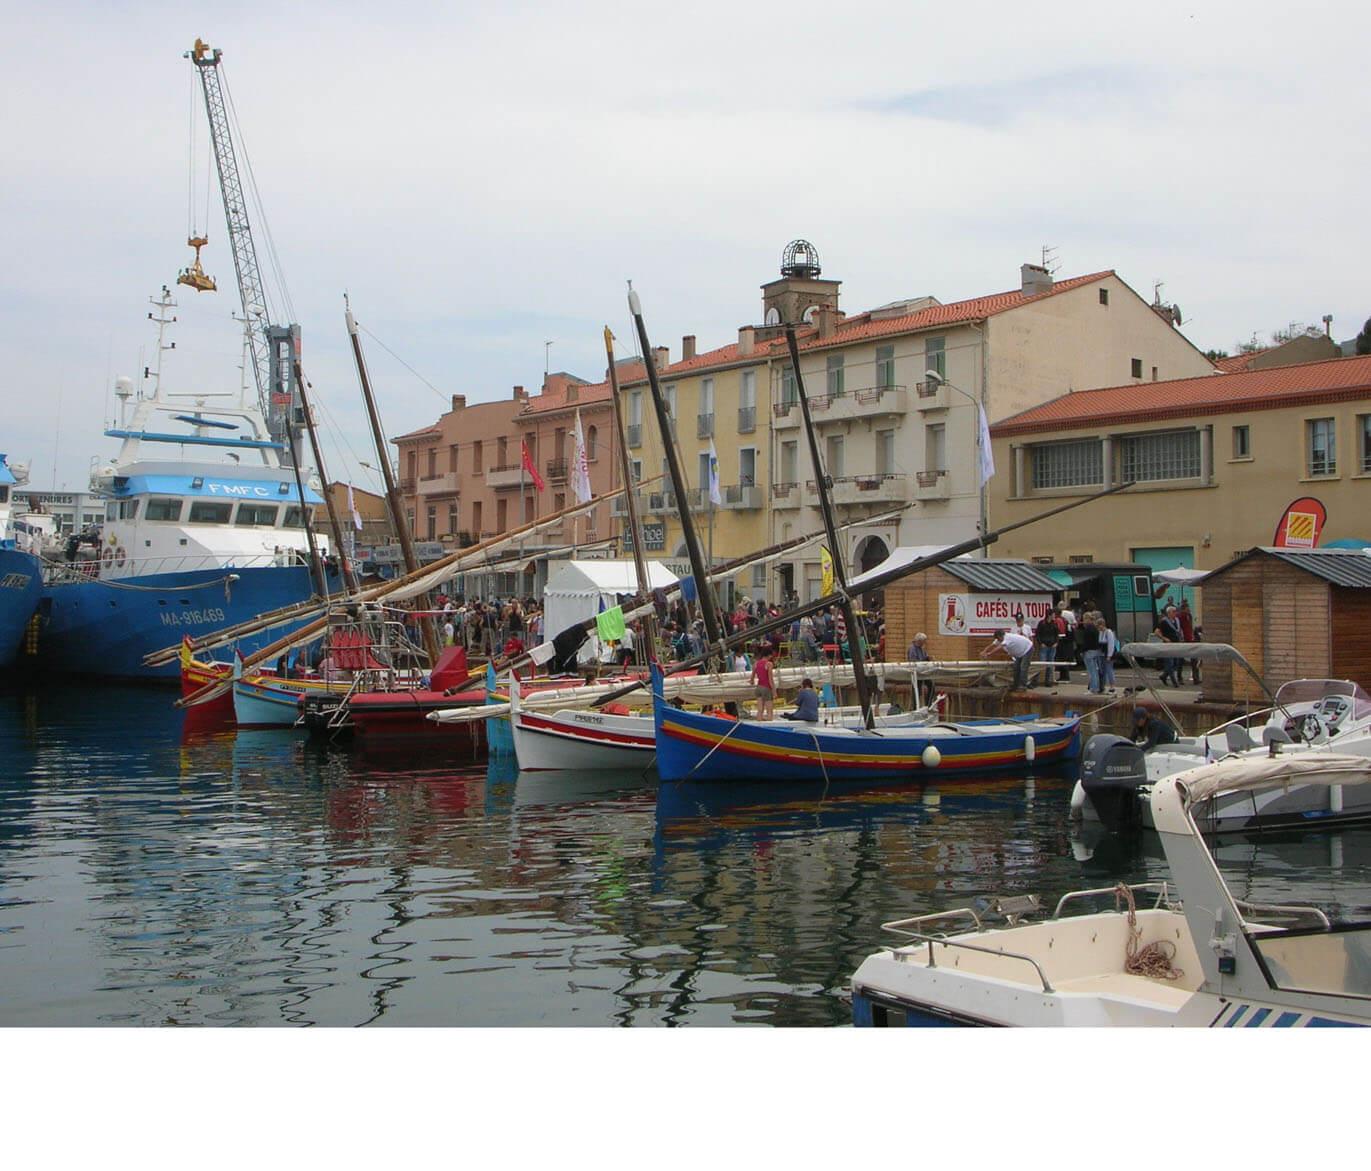 23 - Port-Vendres - les barques catalanes